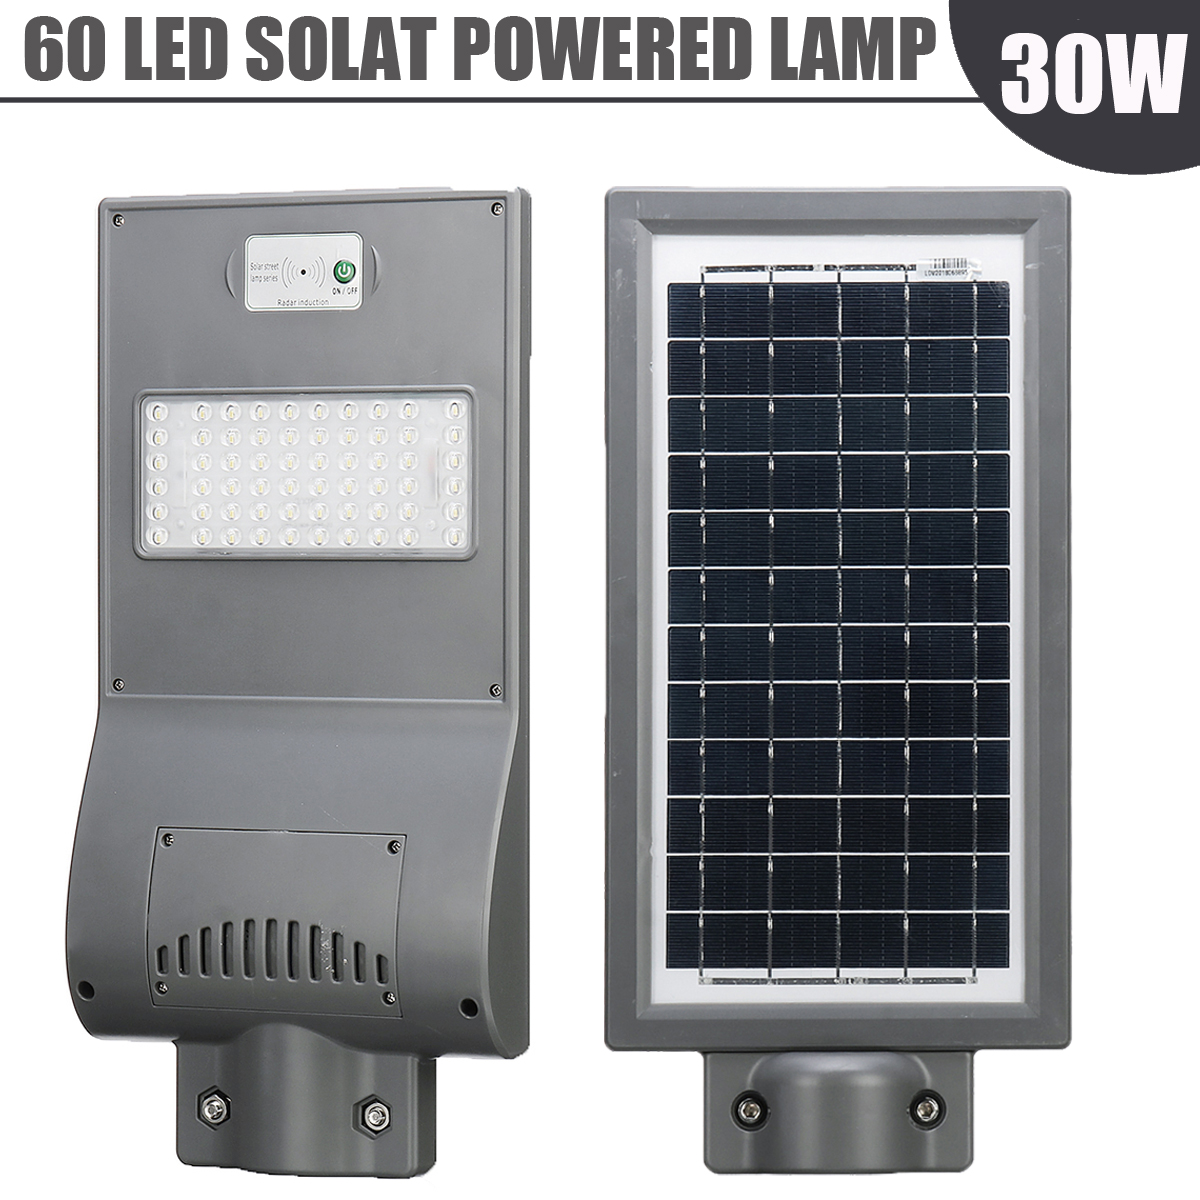 30W-Solar-Panel-Power-LED-Street-Light-PIR-Motion-Sensor--Light-Sensor-Wall-Lamp-1504283-4